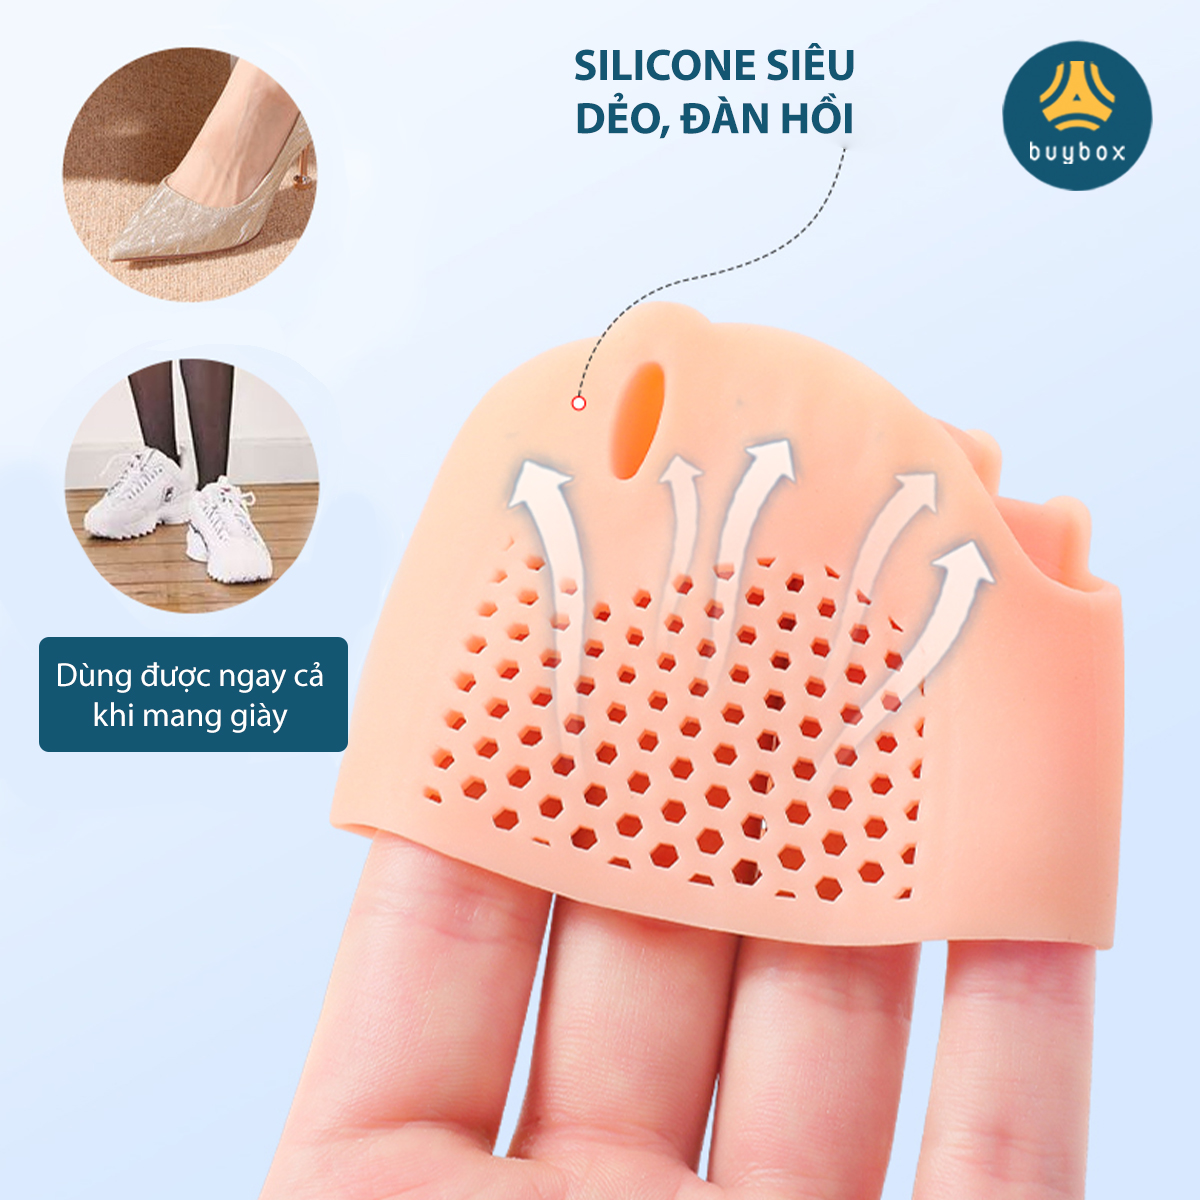 Combo 2 cặp dụng cụ chỉnh hình ngón chân cái bị vẹo Hallux Valgus chất liệu nhựa PC, vớ siliconesilicone tổ ong - Buybox